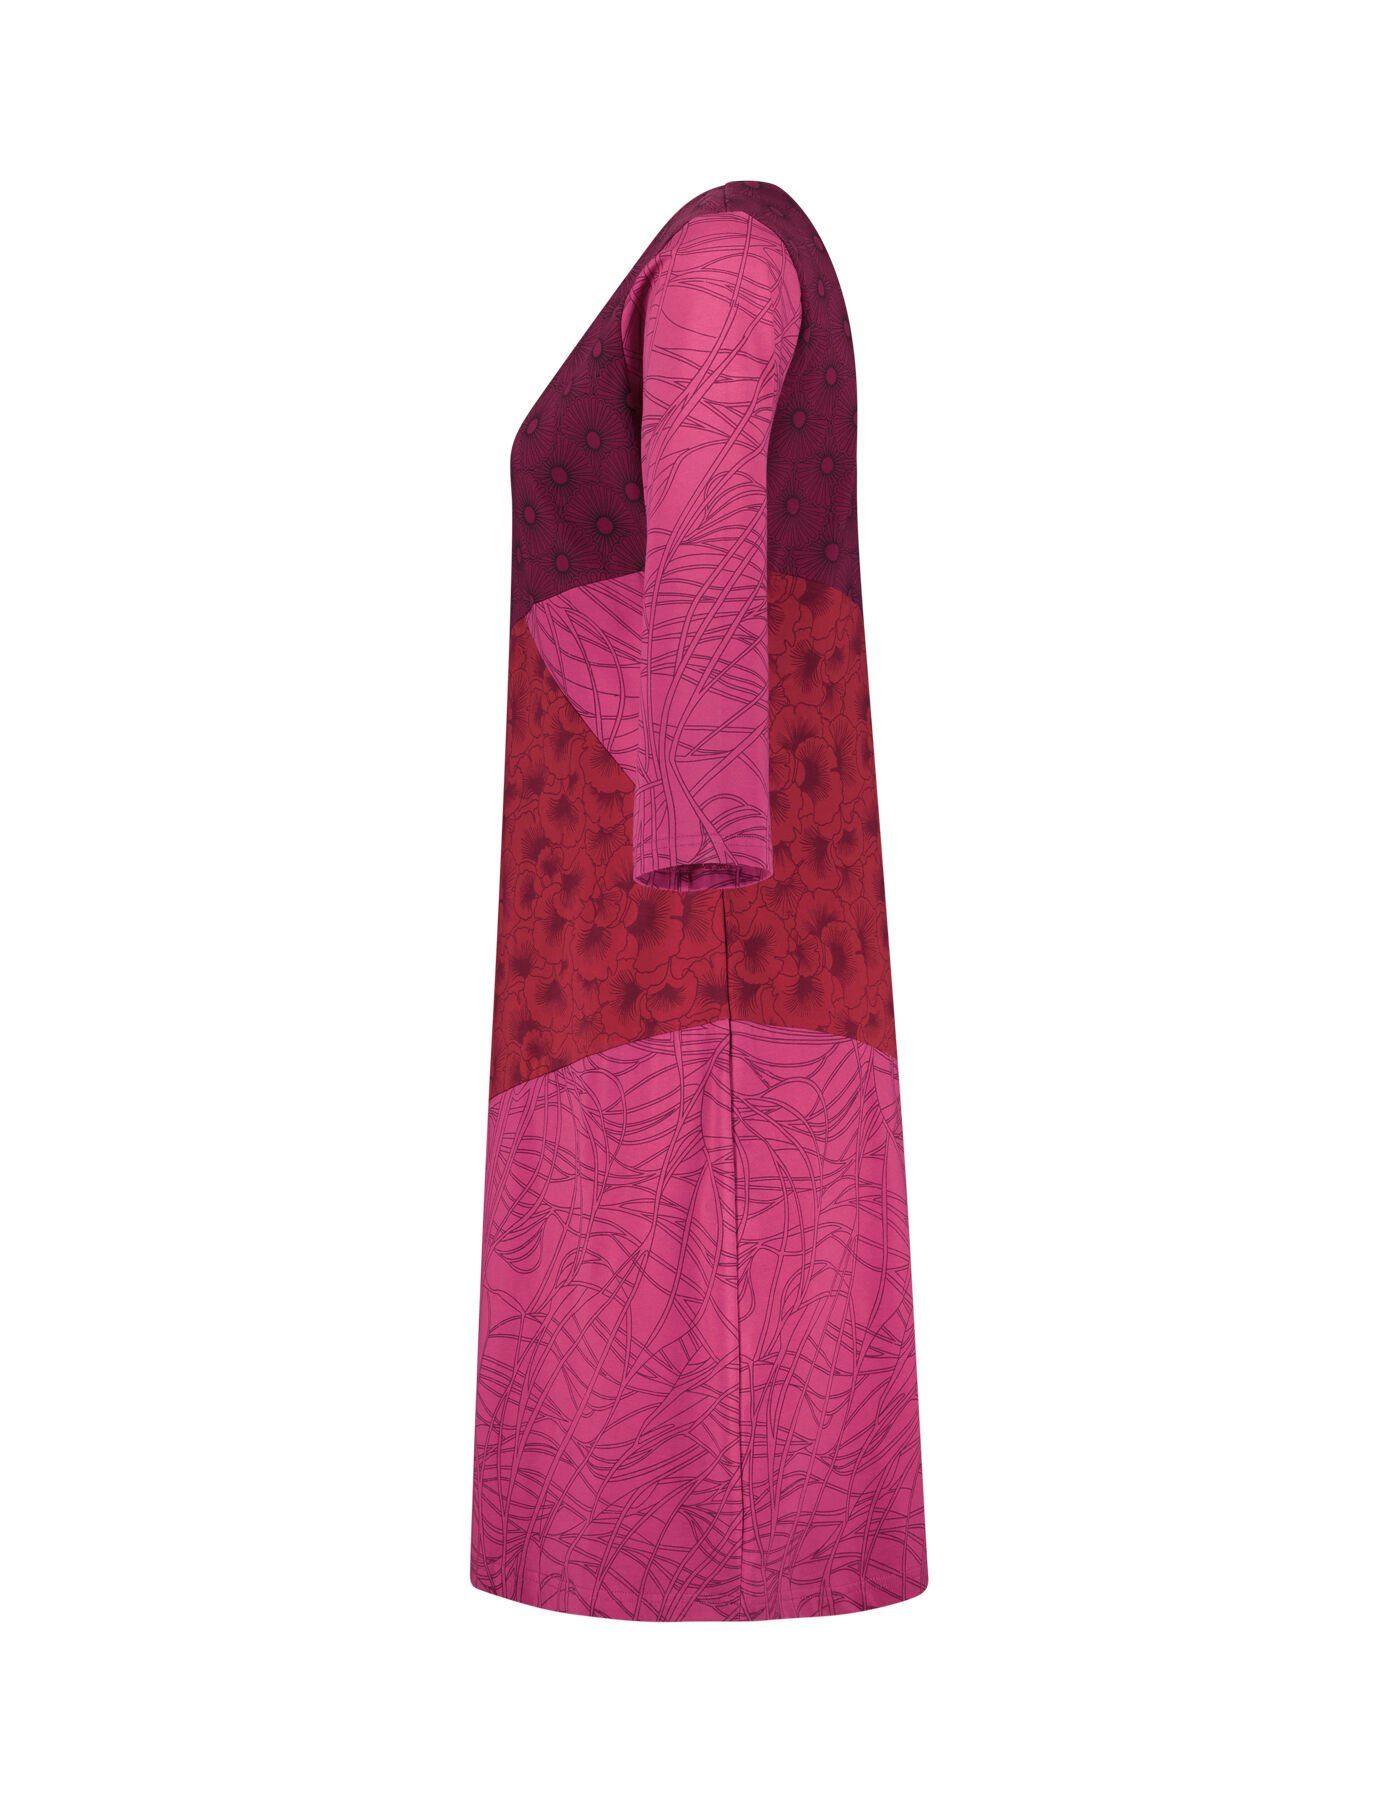 aus Patchwork Jerseykleid Bio-Baumwolle echtes Hippie Ziminka bedruckt Kleid Goa bordeaux Patchwork Deerberg